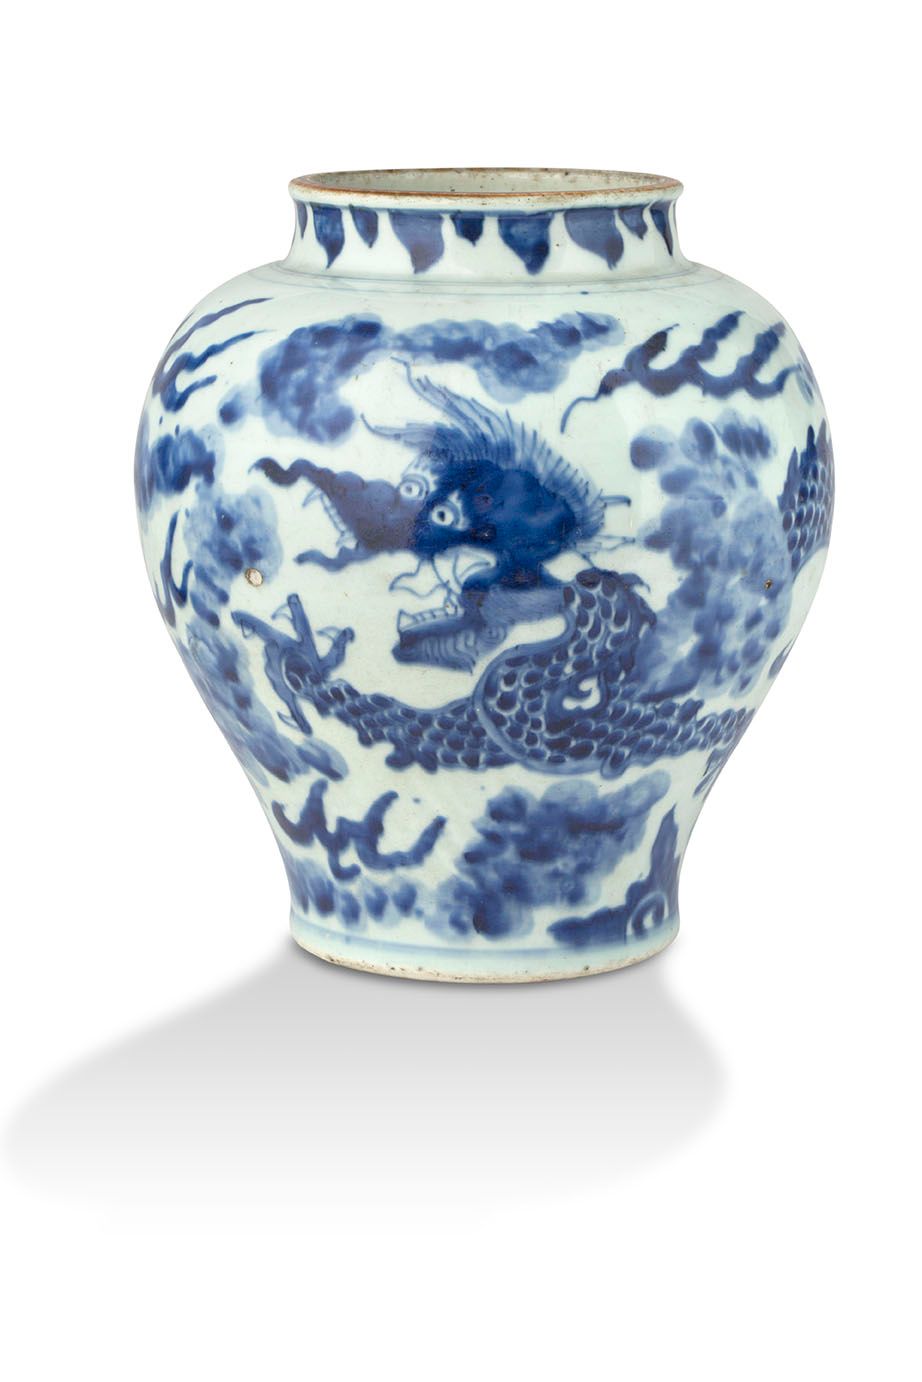 CHINE PÉRIODE TRANSITION, MILIEU DU XVIIe SIÈCLE 中国 过渡时期，17世纪中期 青花瓷罐